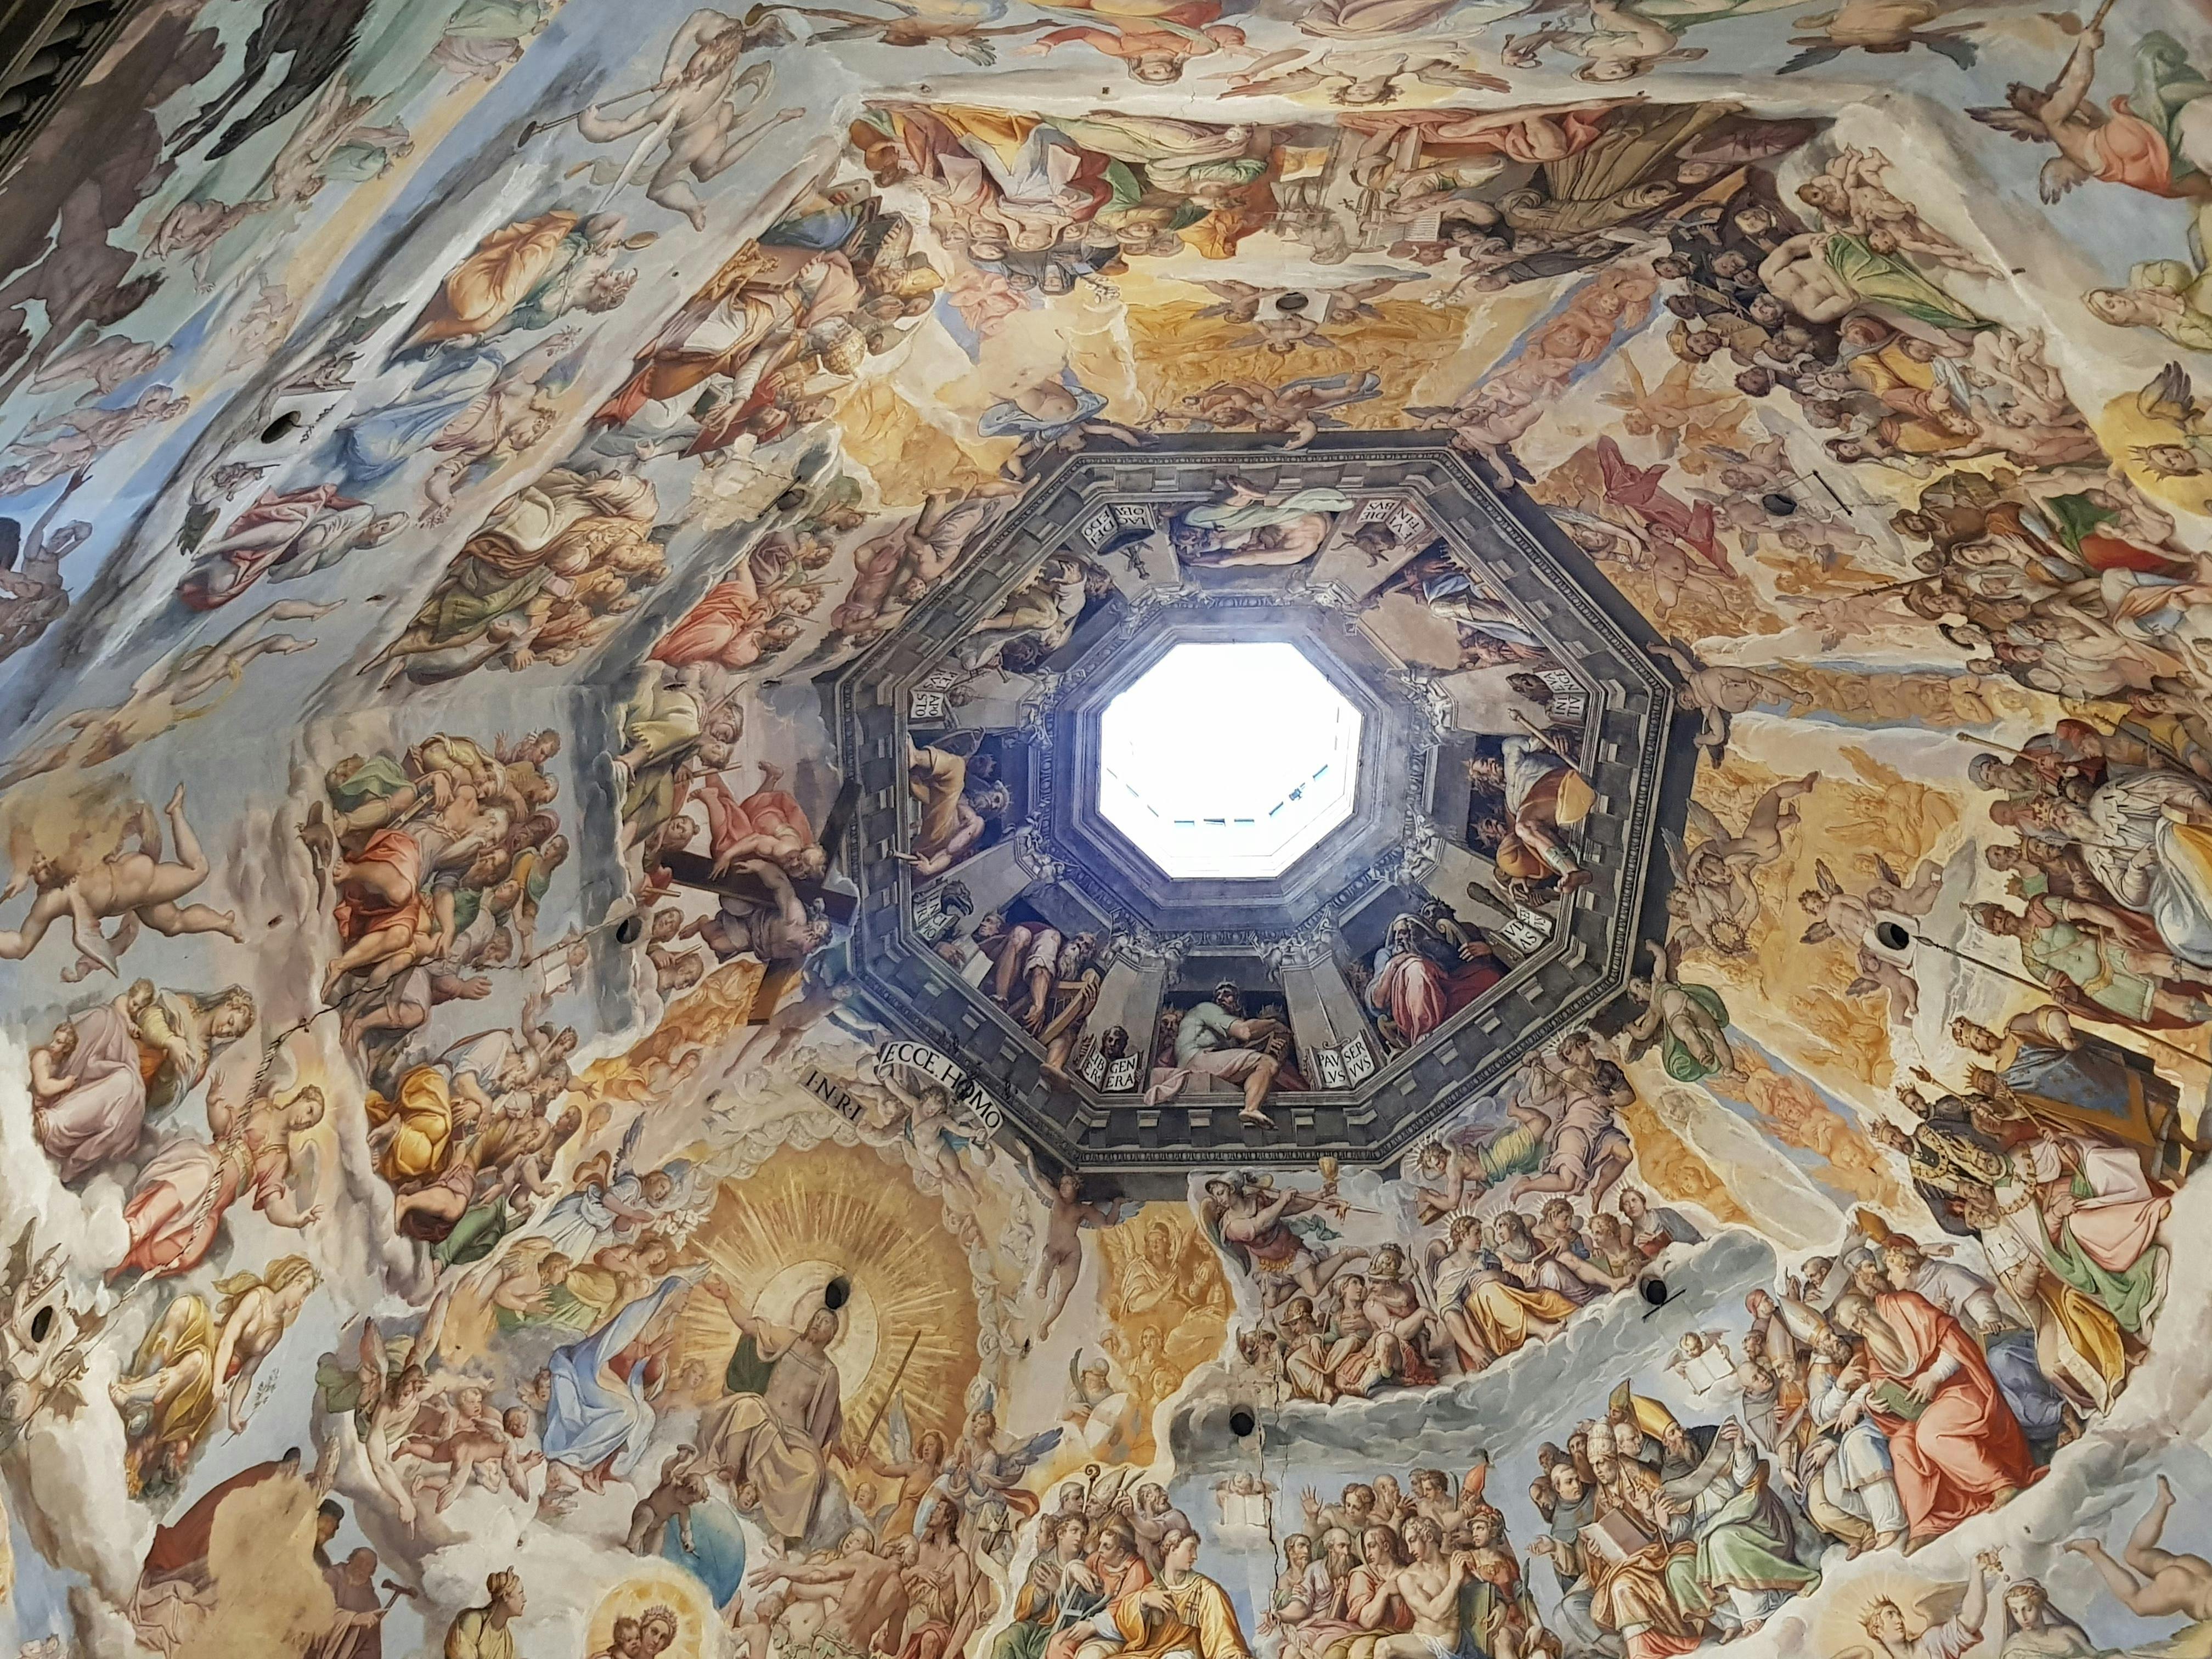 Zwiedzanie katedry we Florencji i wspinaczka na kopułę